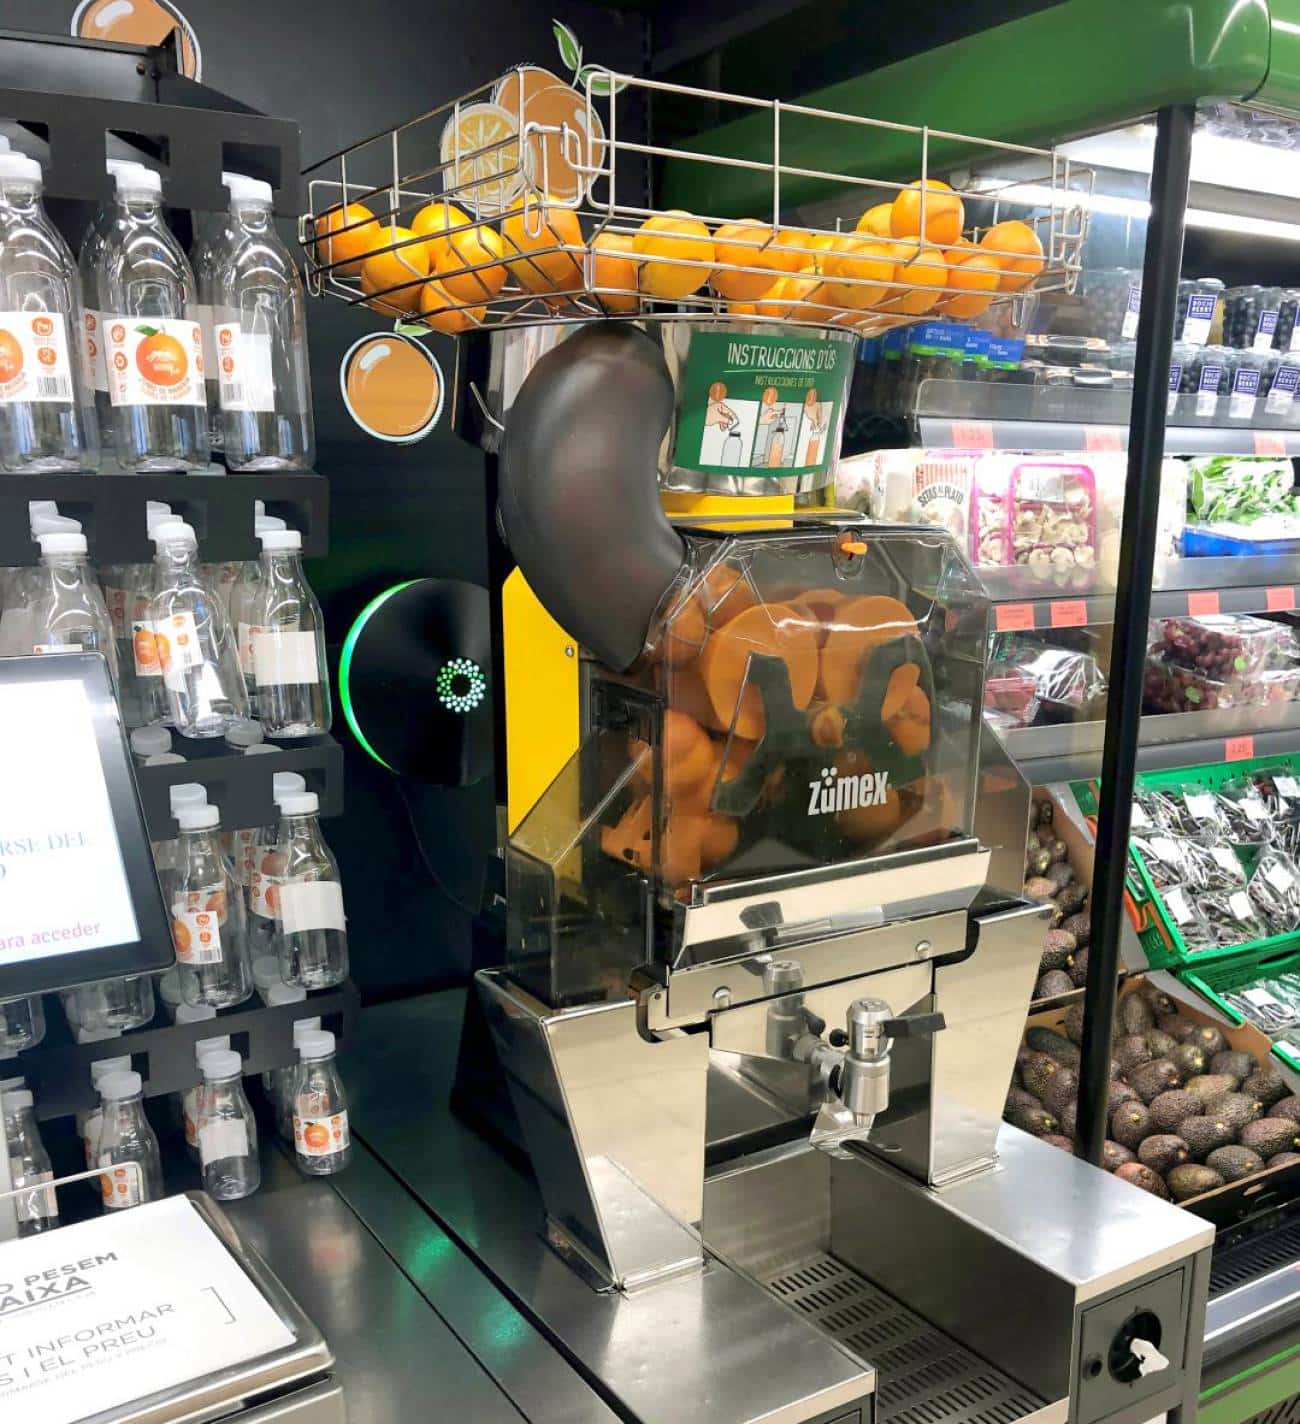 Máquina de zumo de naranja junto a las botellas en Mercadona.